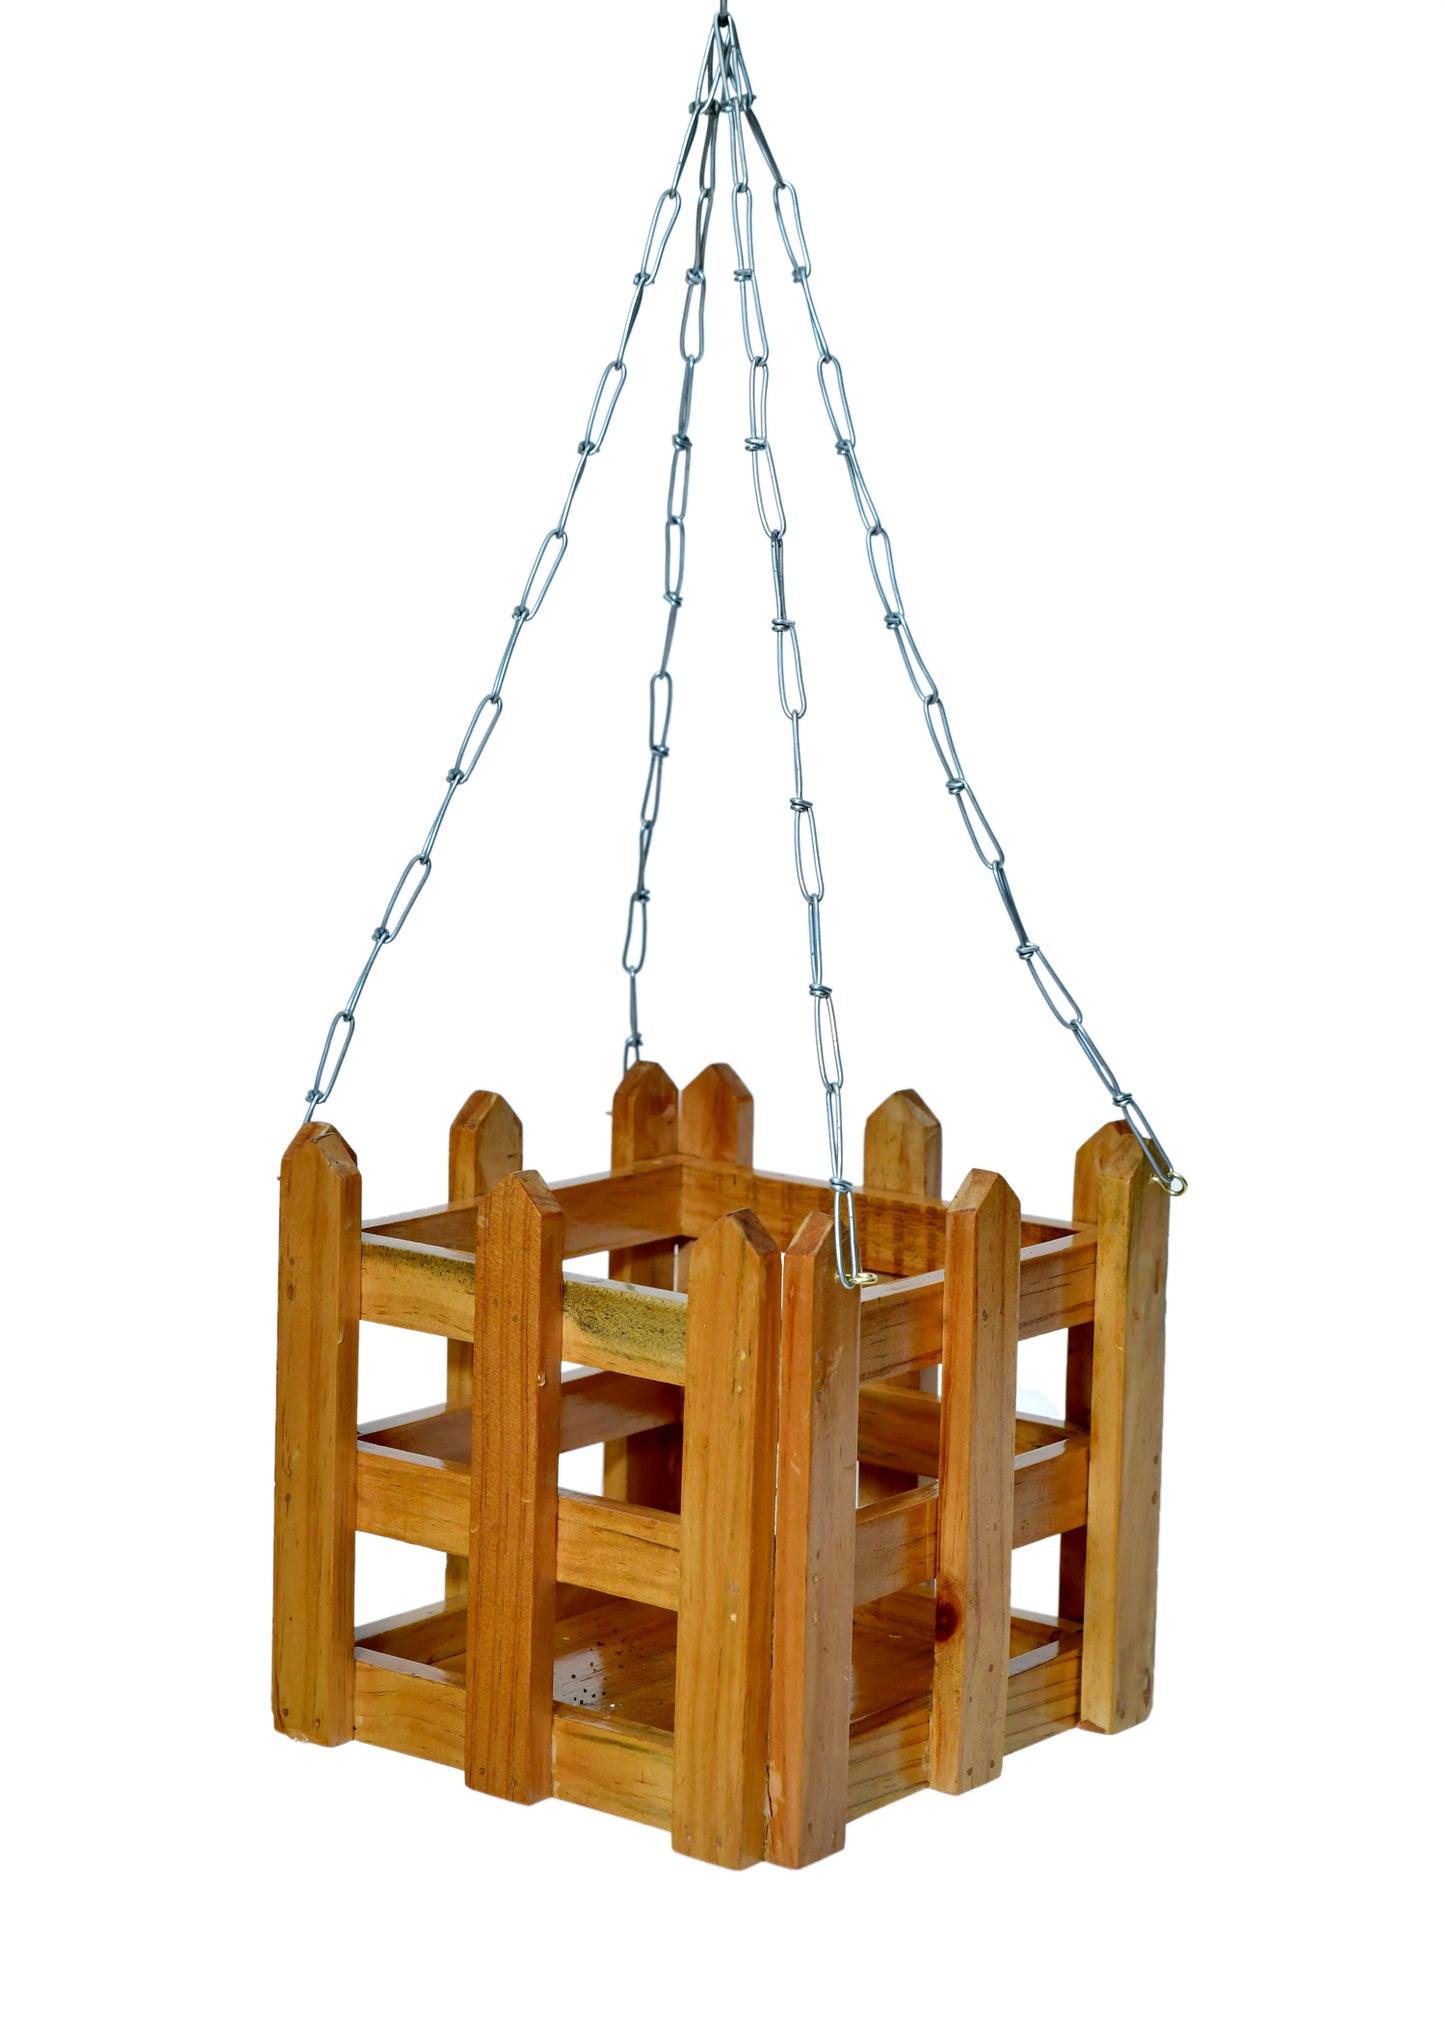 The Weaver's Nest Wooden Hanging Planter , Plants Holder Pot for Home, Offices, Restaurants, Garden, Cafe, Balcony, Living Room